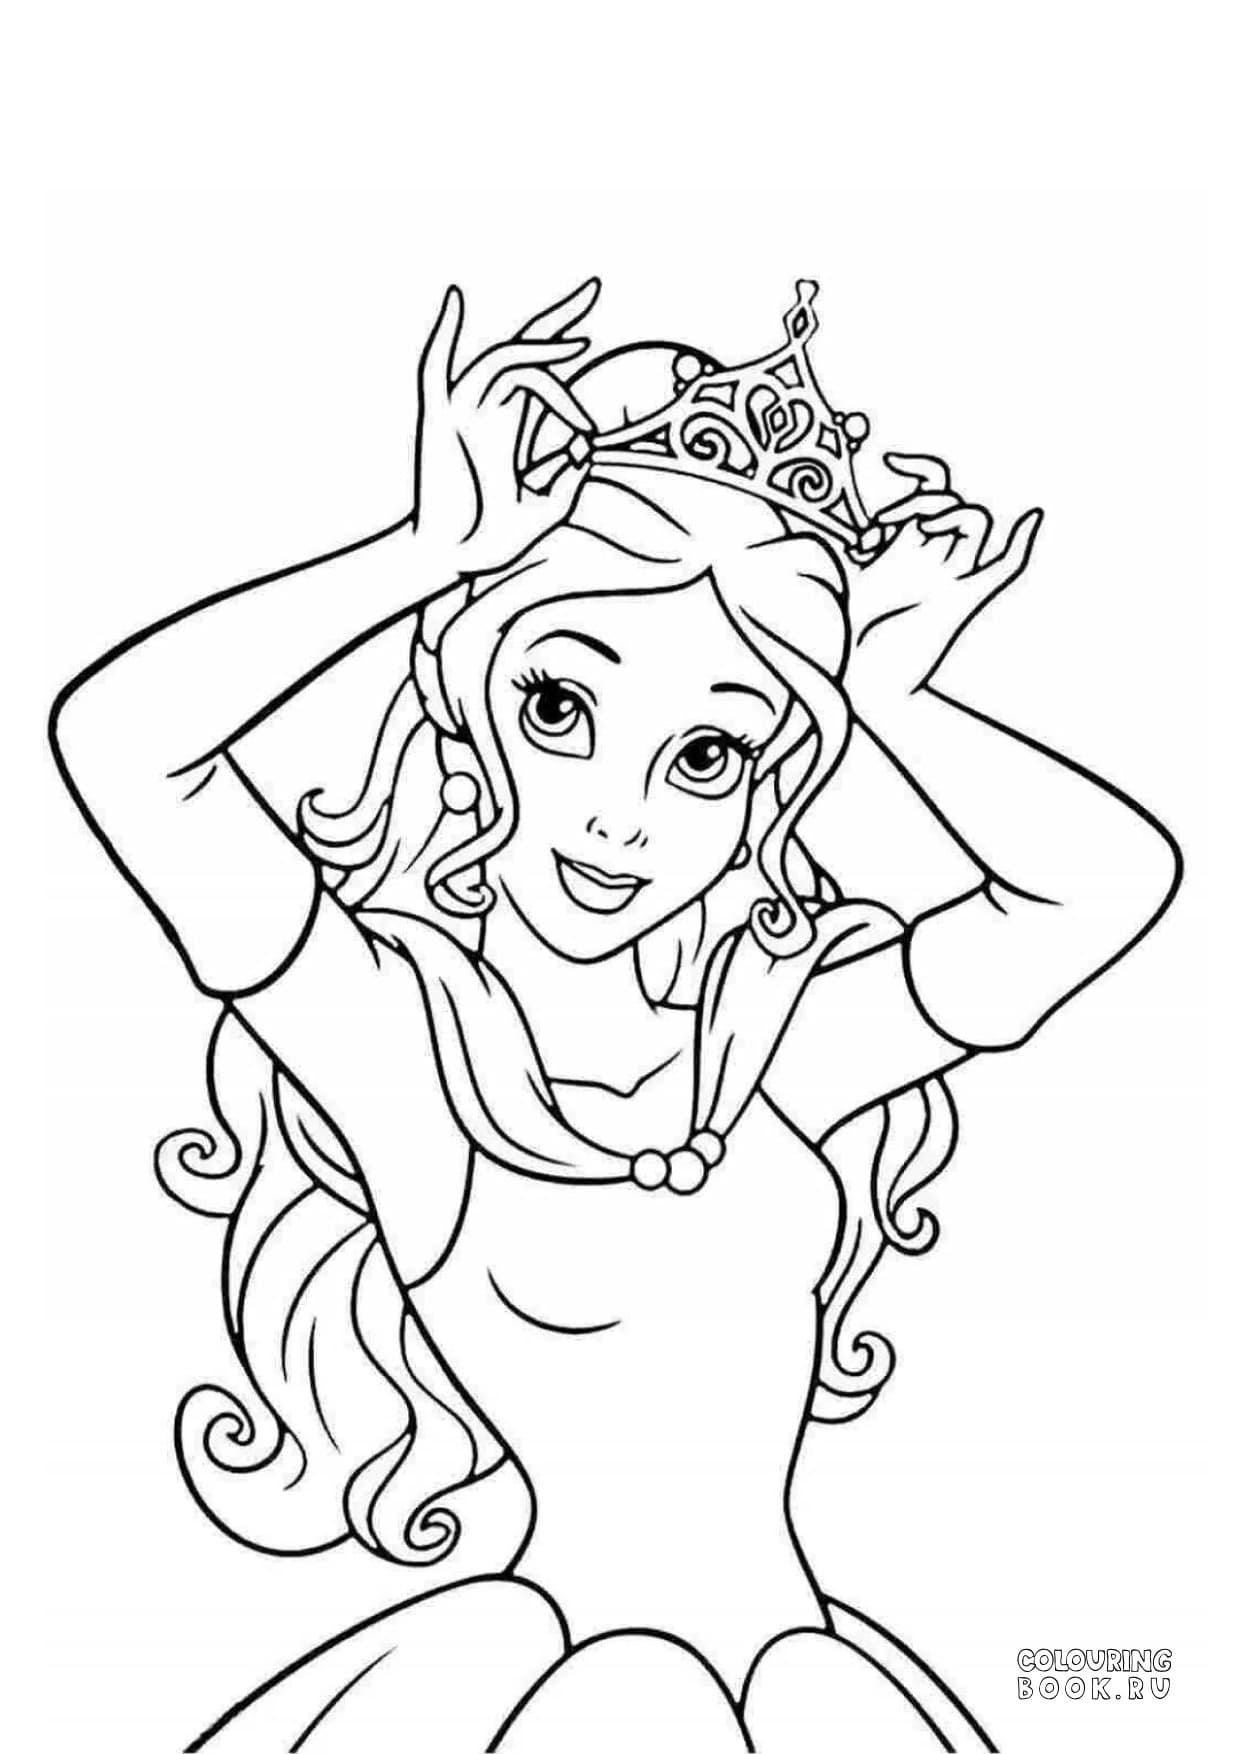 Раскраски - Раскраски для девочек - Принцессы Диснея (Disney Princess) | MirChild